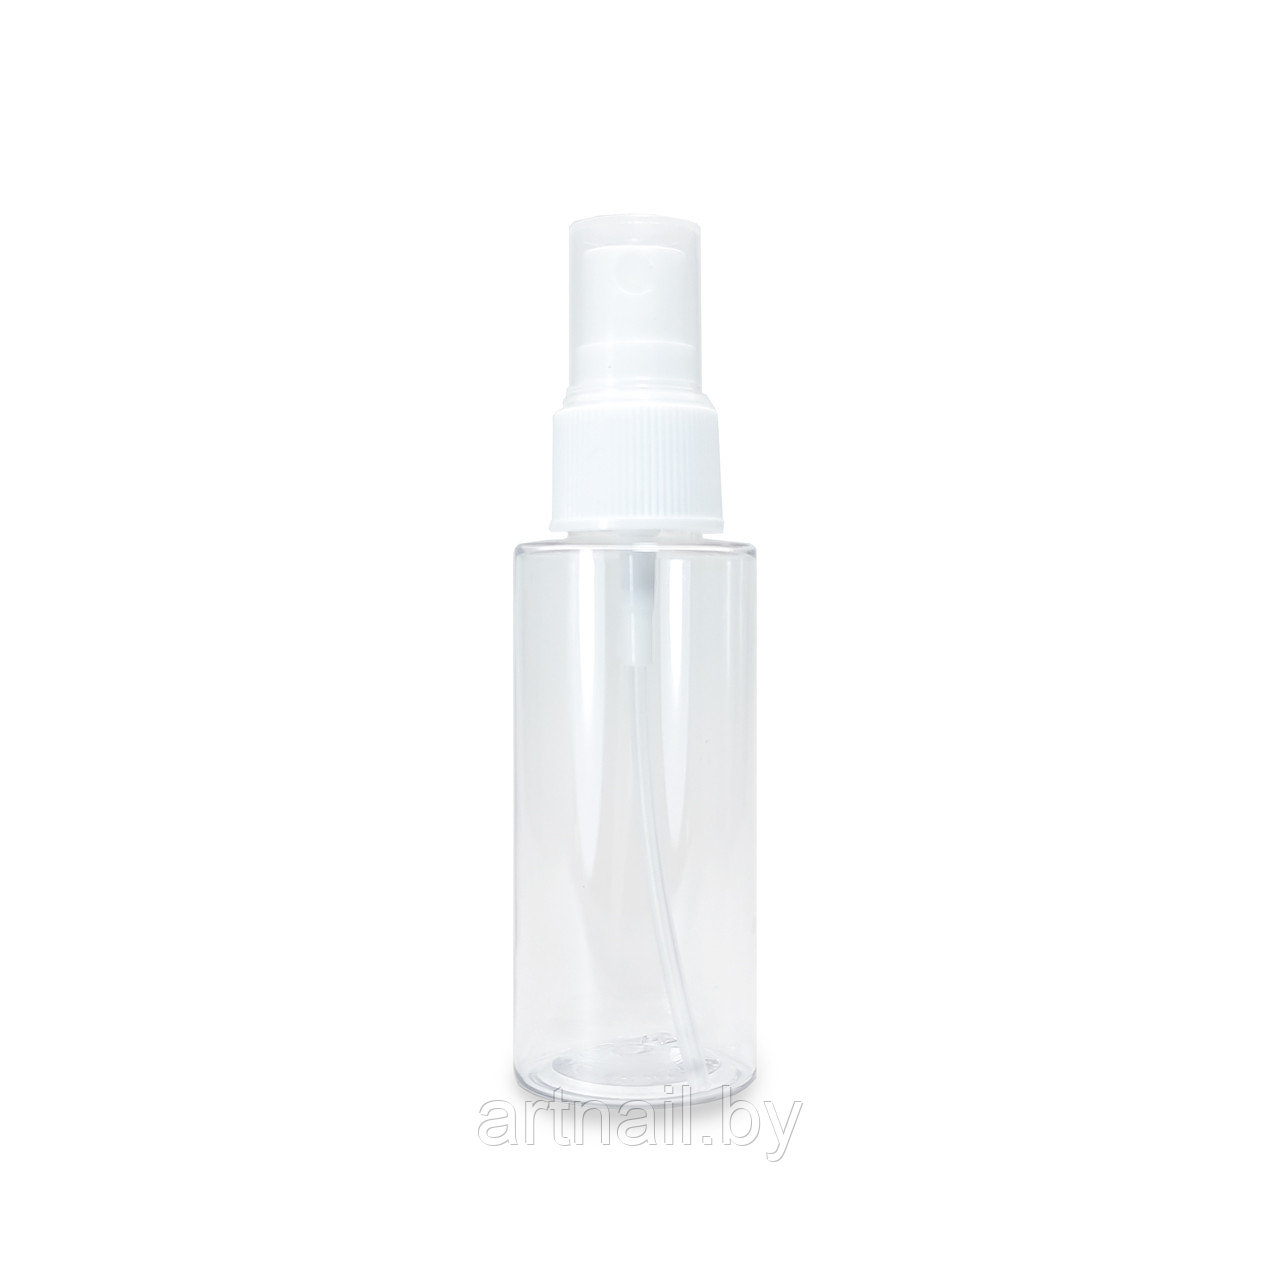 Бутылочка Irisk с распылителем прозрачная пластиковая, 50 мл